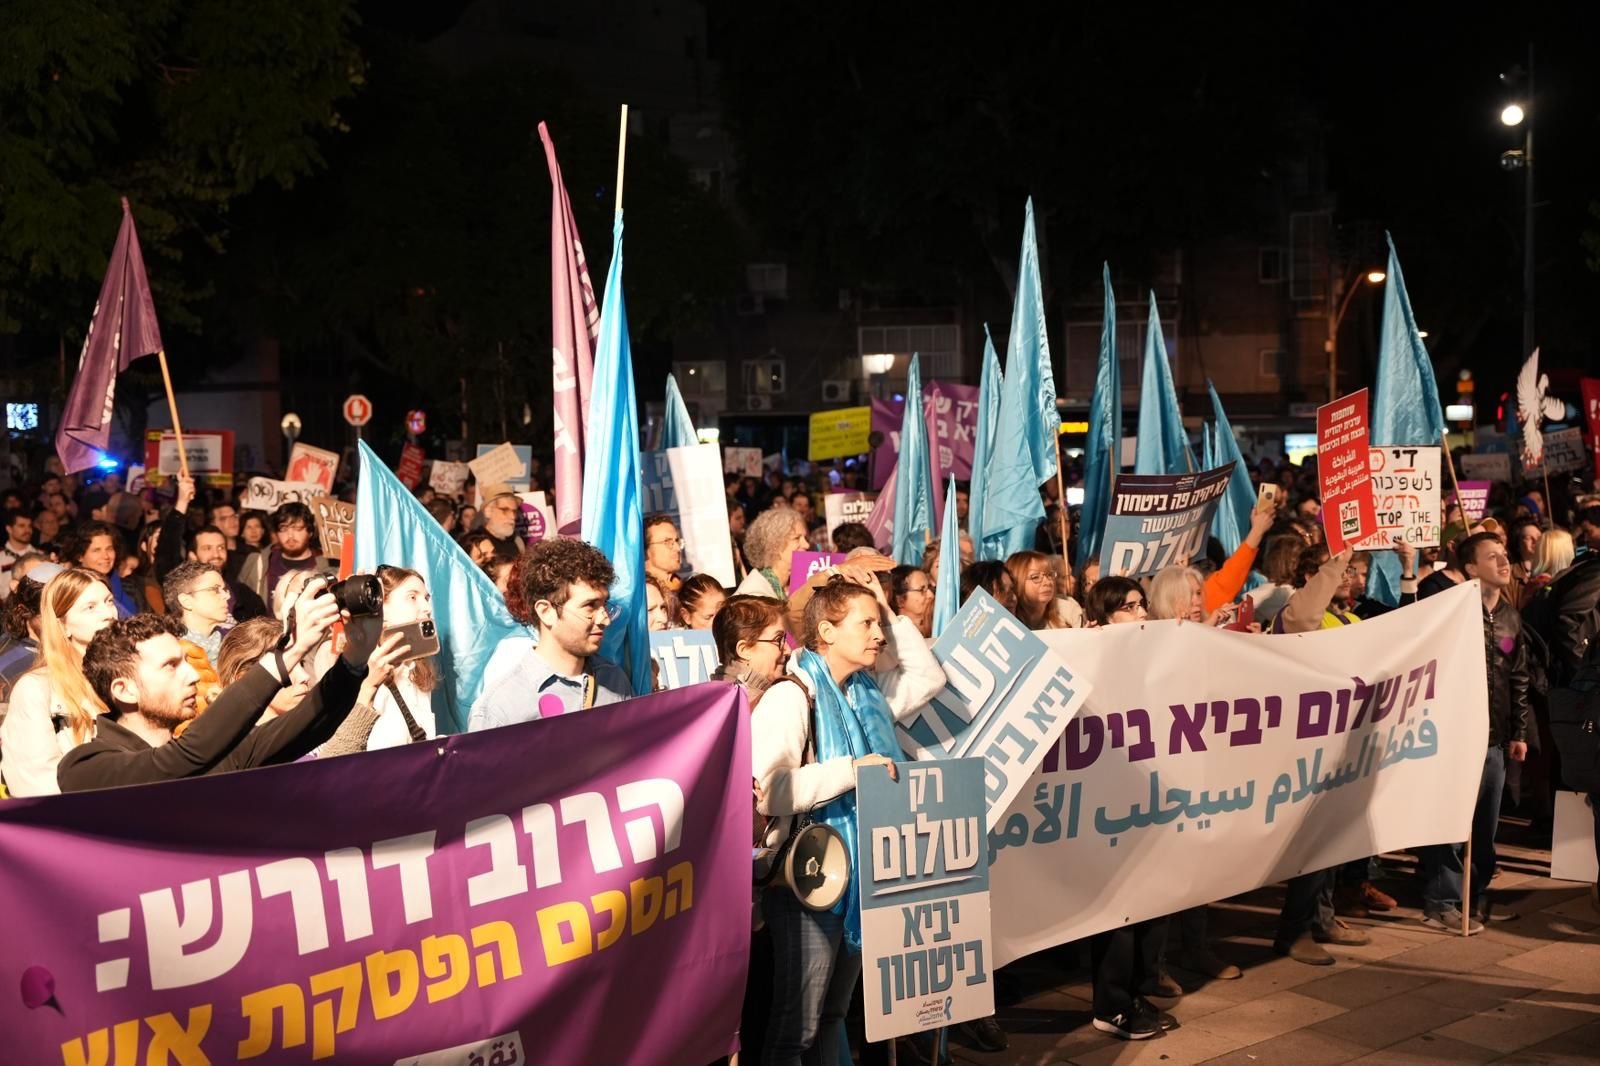 مباشر: تحت عنوان "وحده السلام، يجلب الامن"، المئات في مظاهرة مطالبة بوقف الحرب في تل ابيب-3